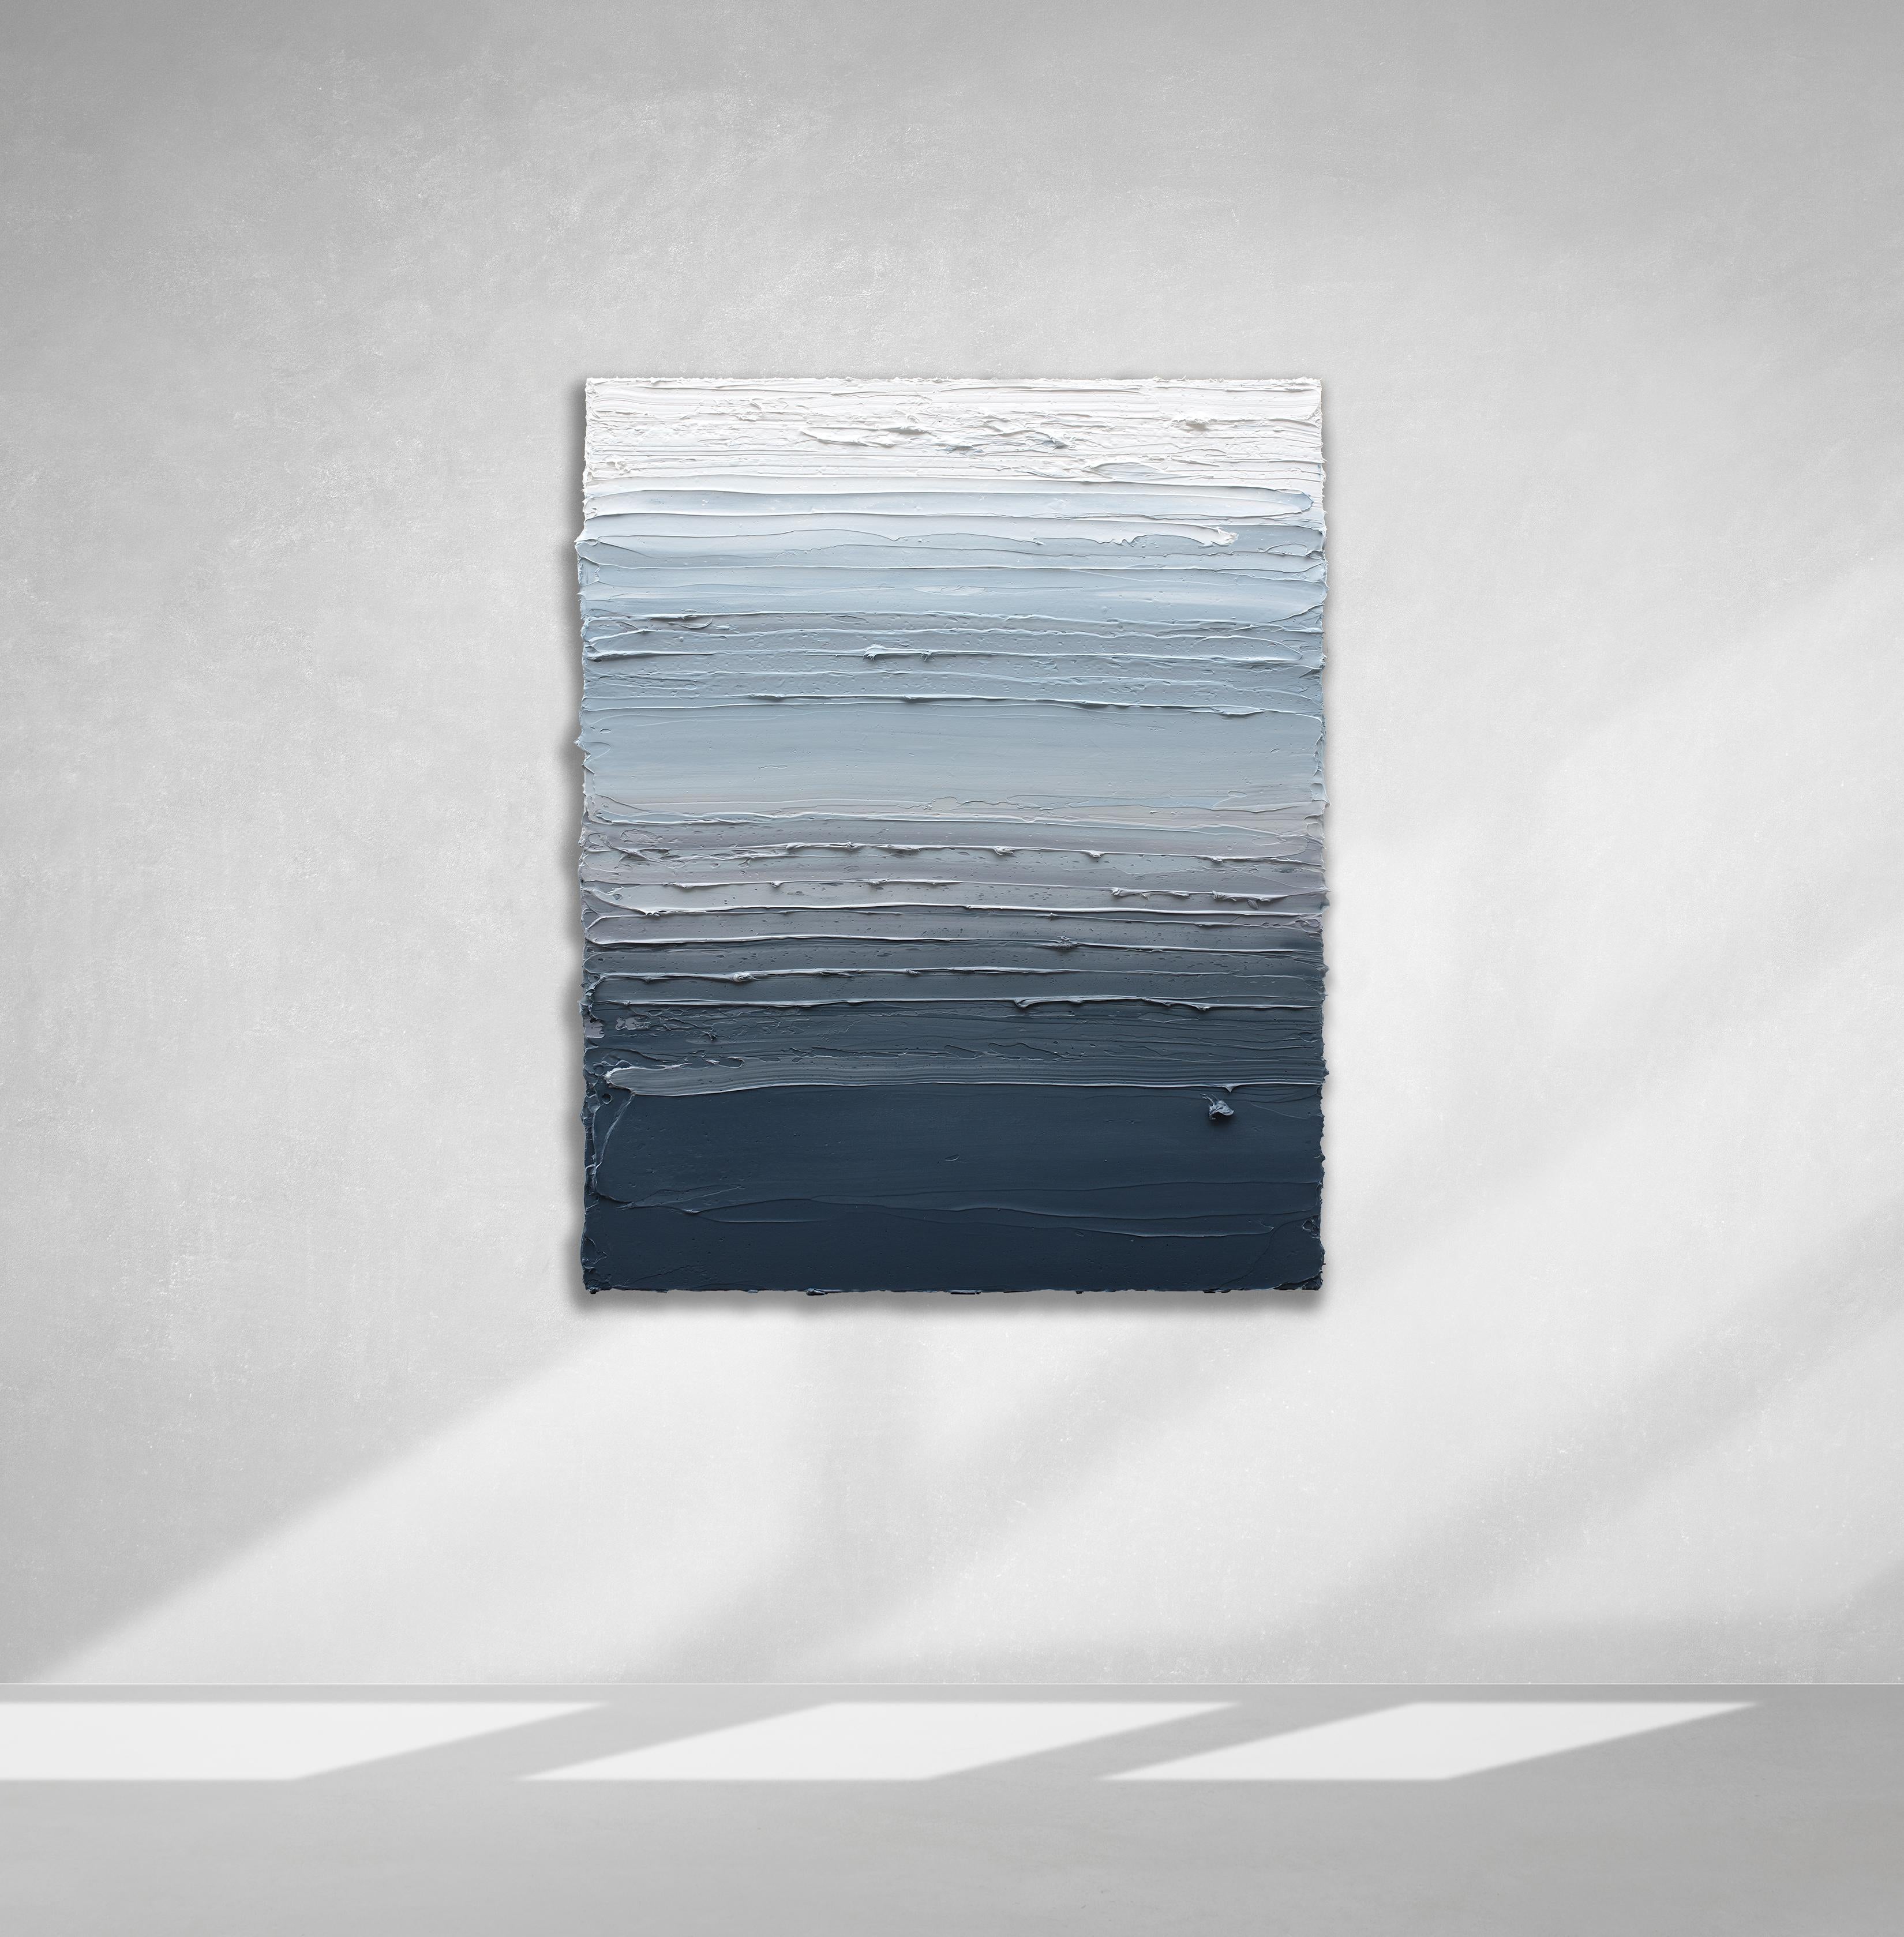 Cette peinture abstraite de Teodora Guererra présente une palette de bleu et de blanc allant du bleu-gris profond au bas de la composition et s'estompant jusqu'au bleu clair et au blanc au sommet. L'artiste applique d'épaisses couches de peinture à